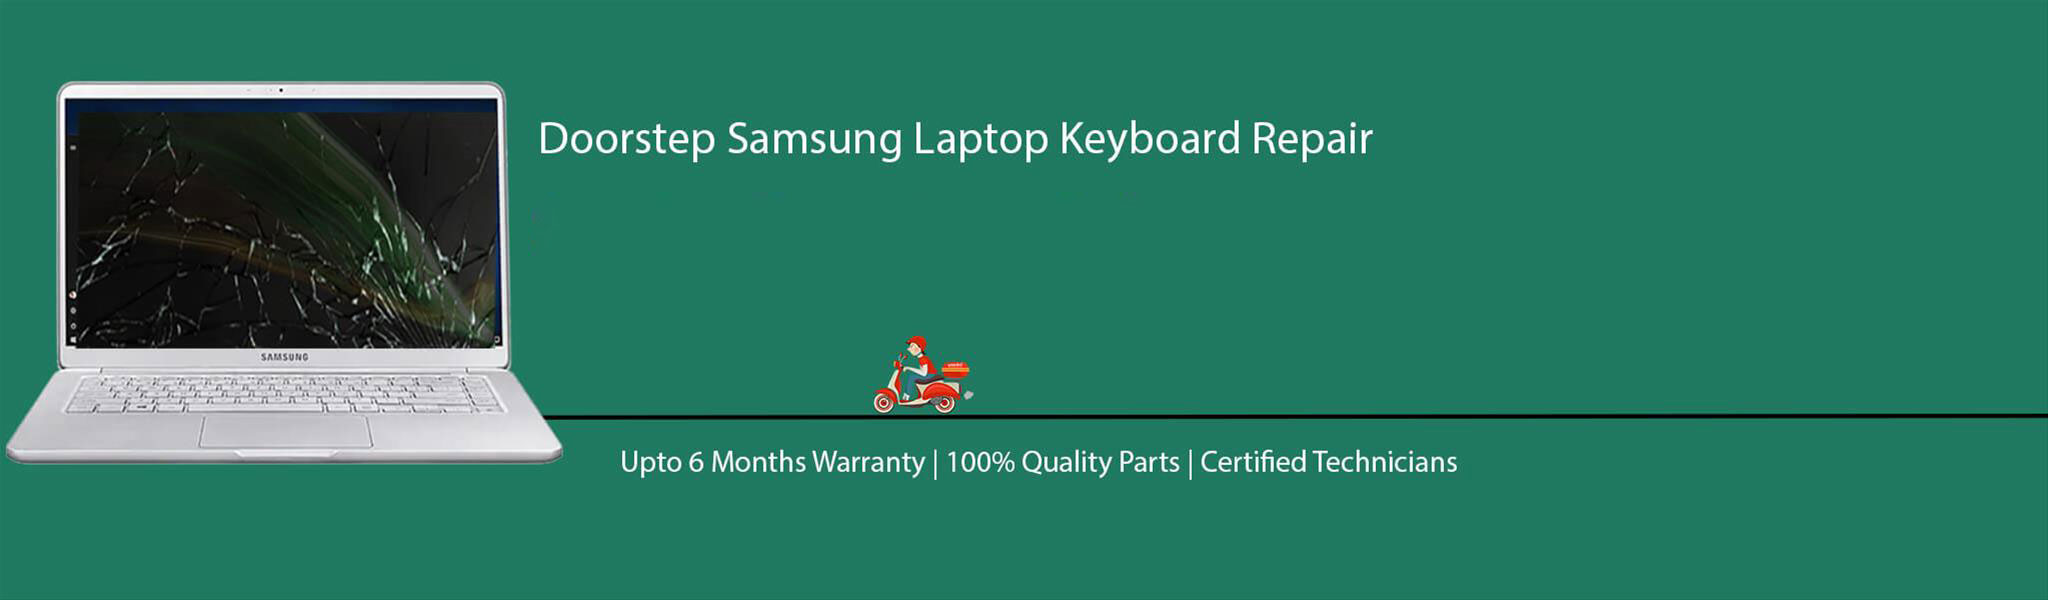 samsung-laptop-keyboard-repair.jpg